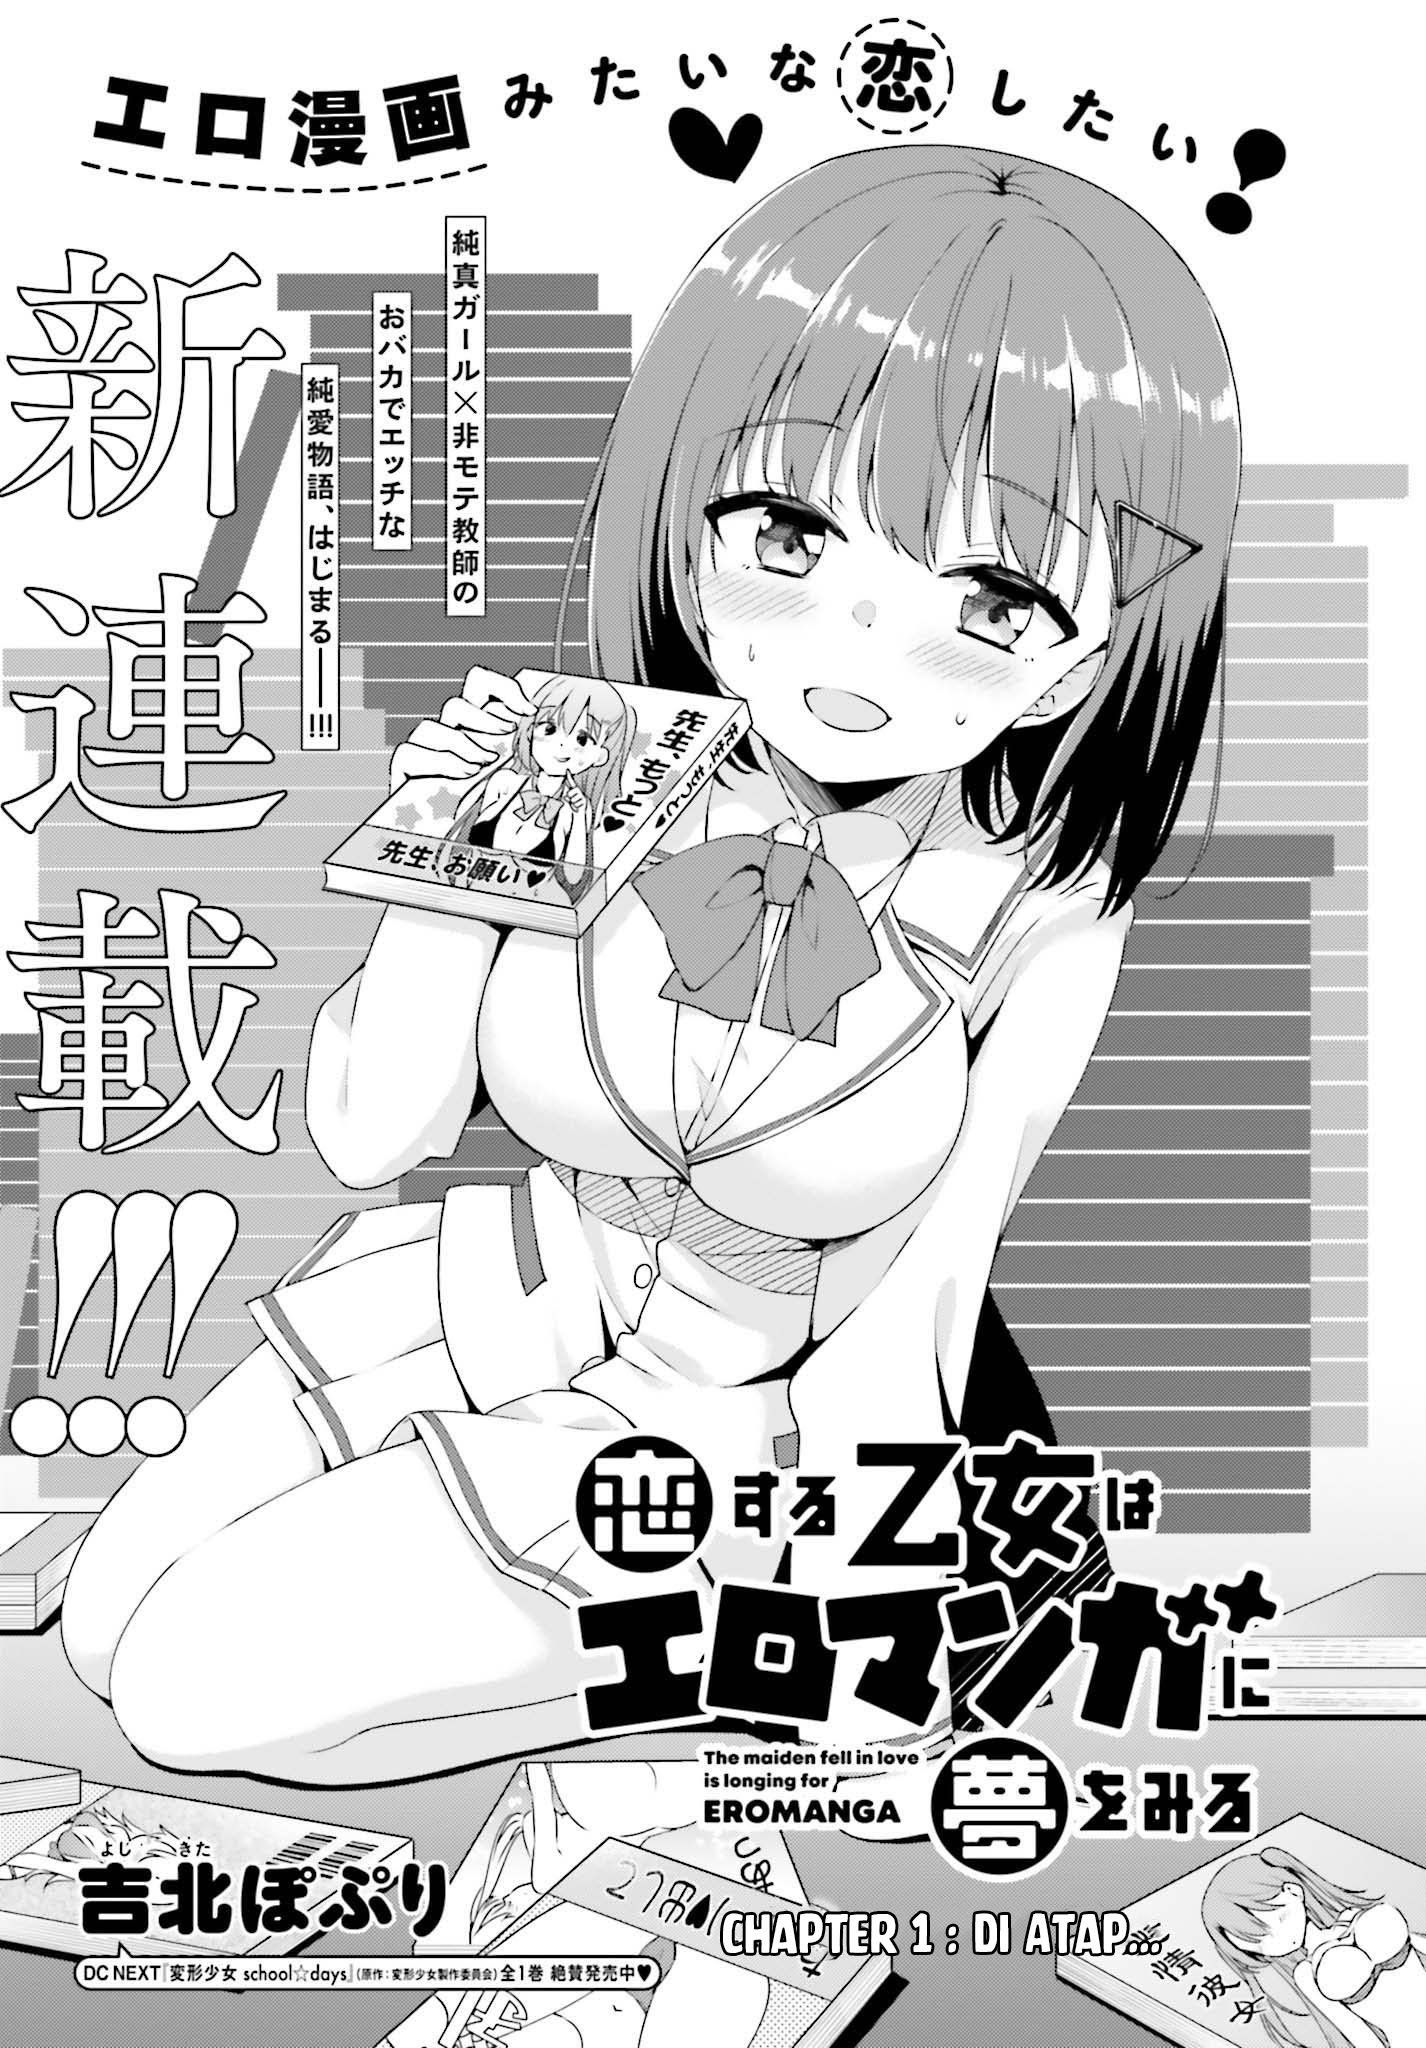 Baca Koisuru Otome wa Eromanga ni Yume wo Miru Chapter 1  - GudangKomik